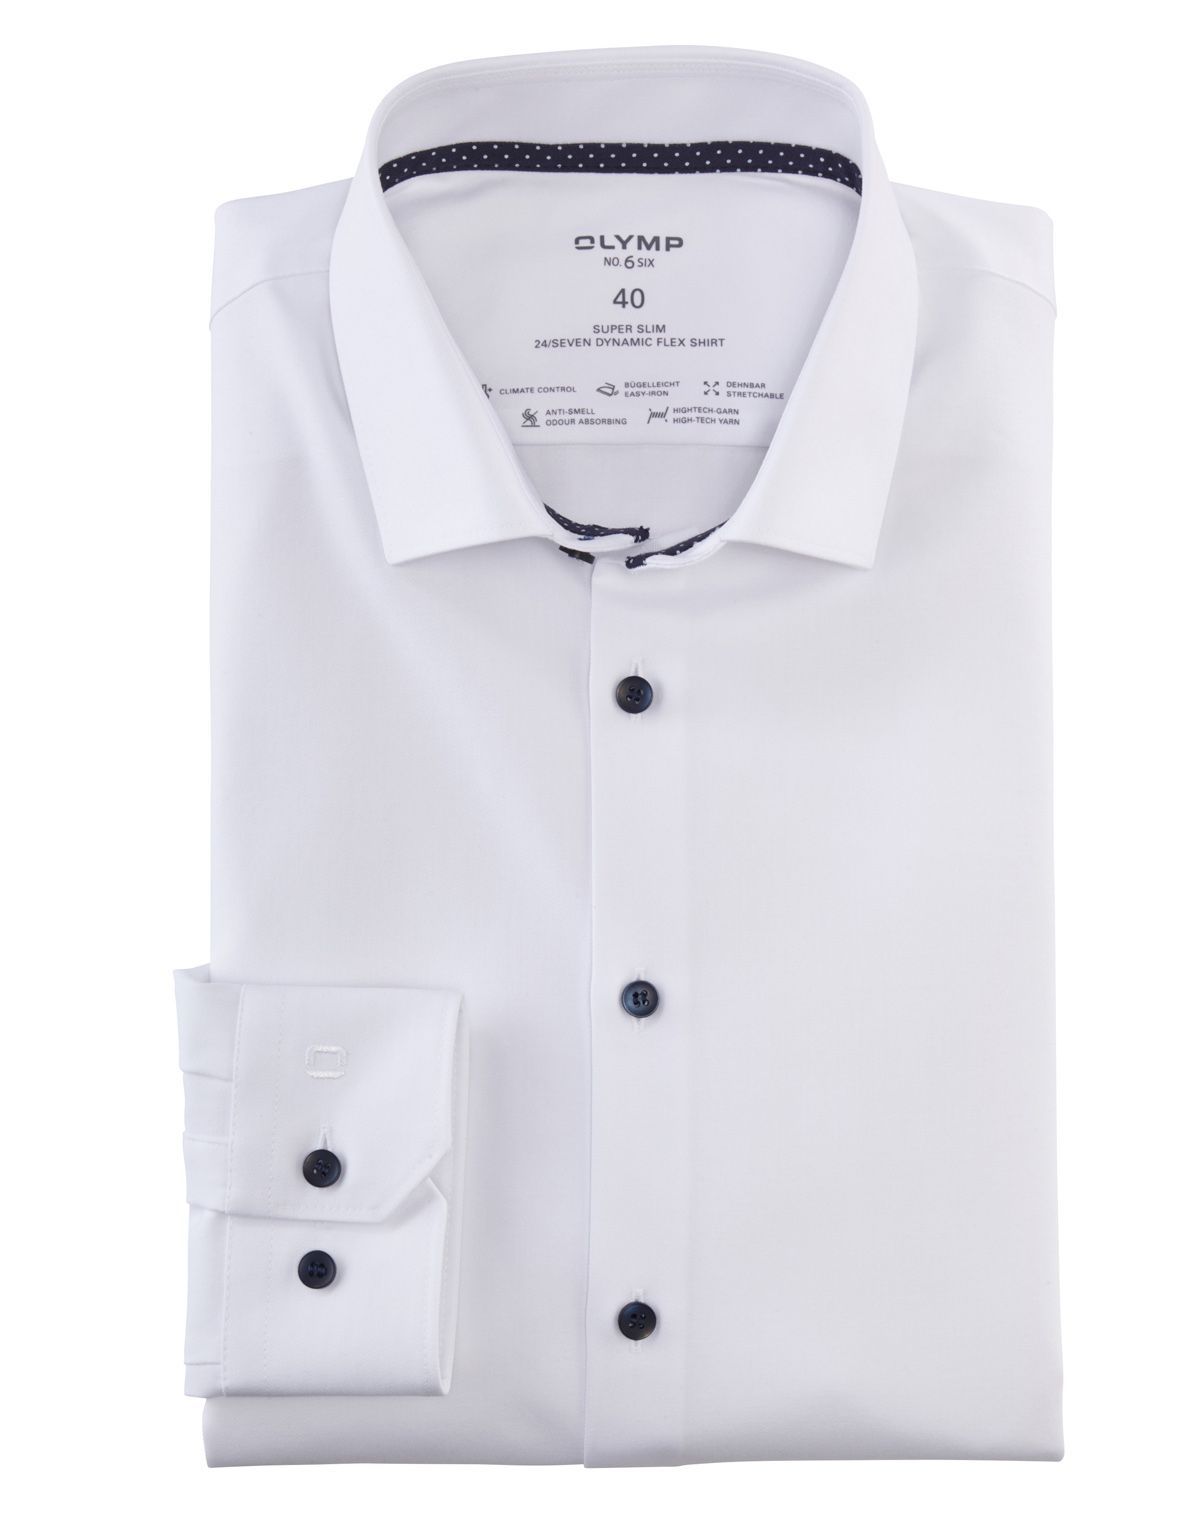 Рубашка мужская белая OLYMP 24/7 супер слим, артикул 07546400